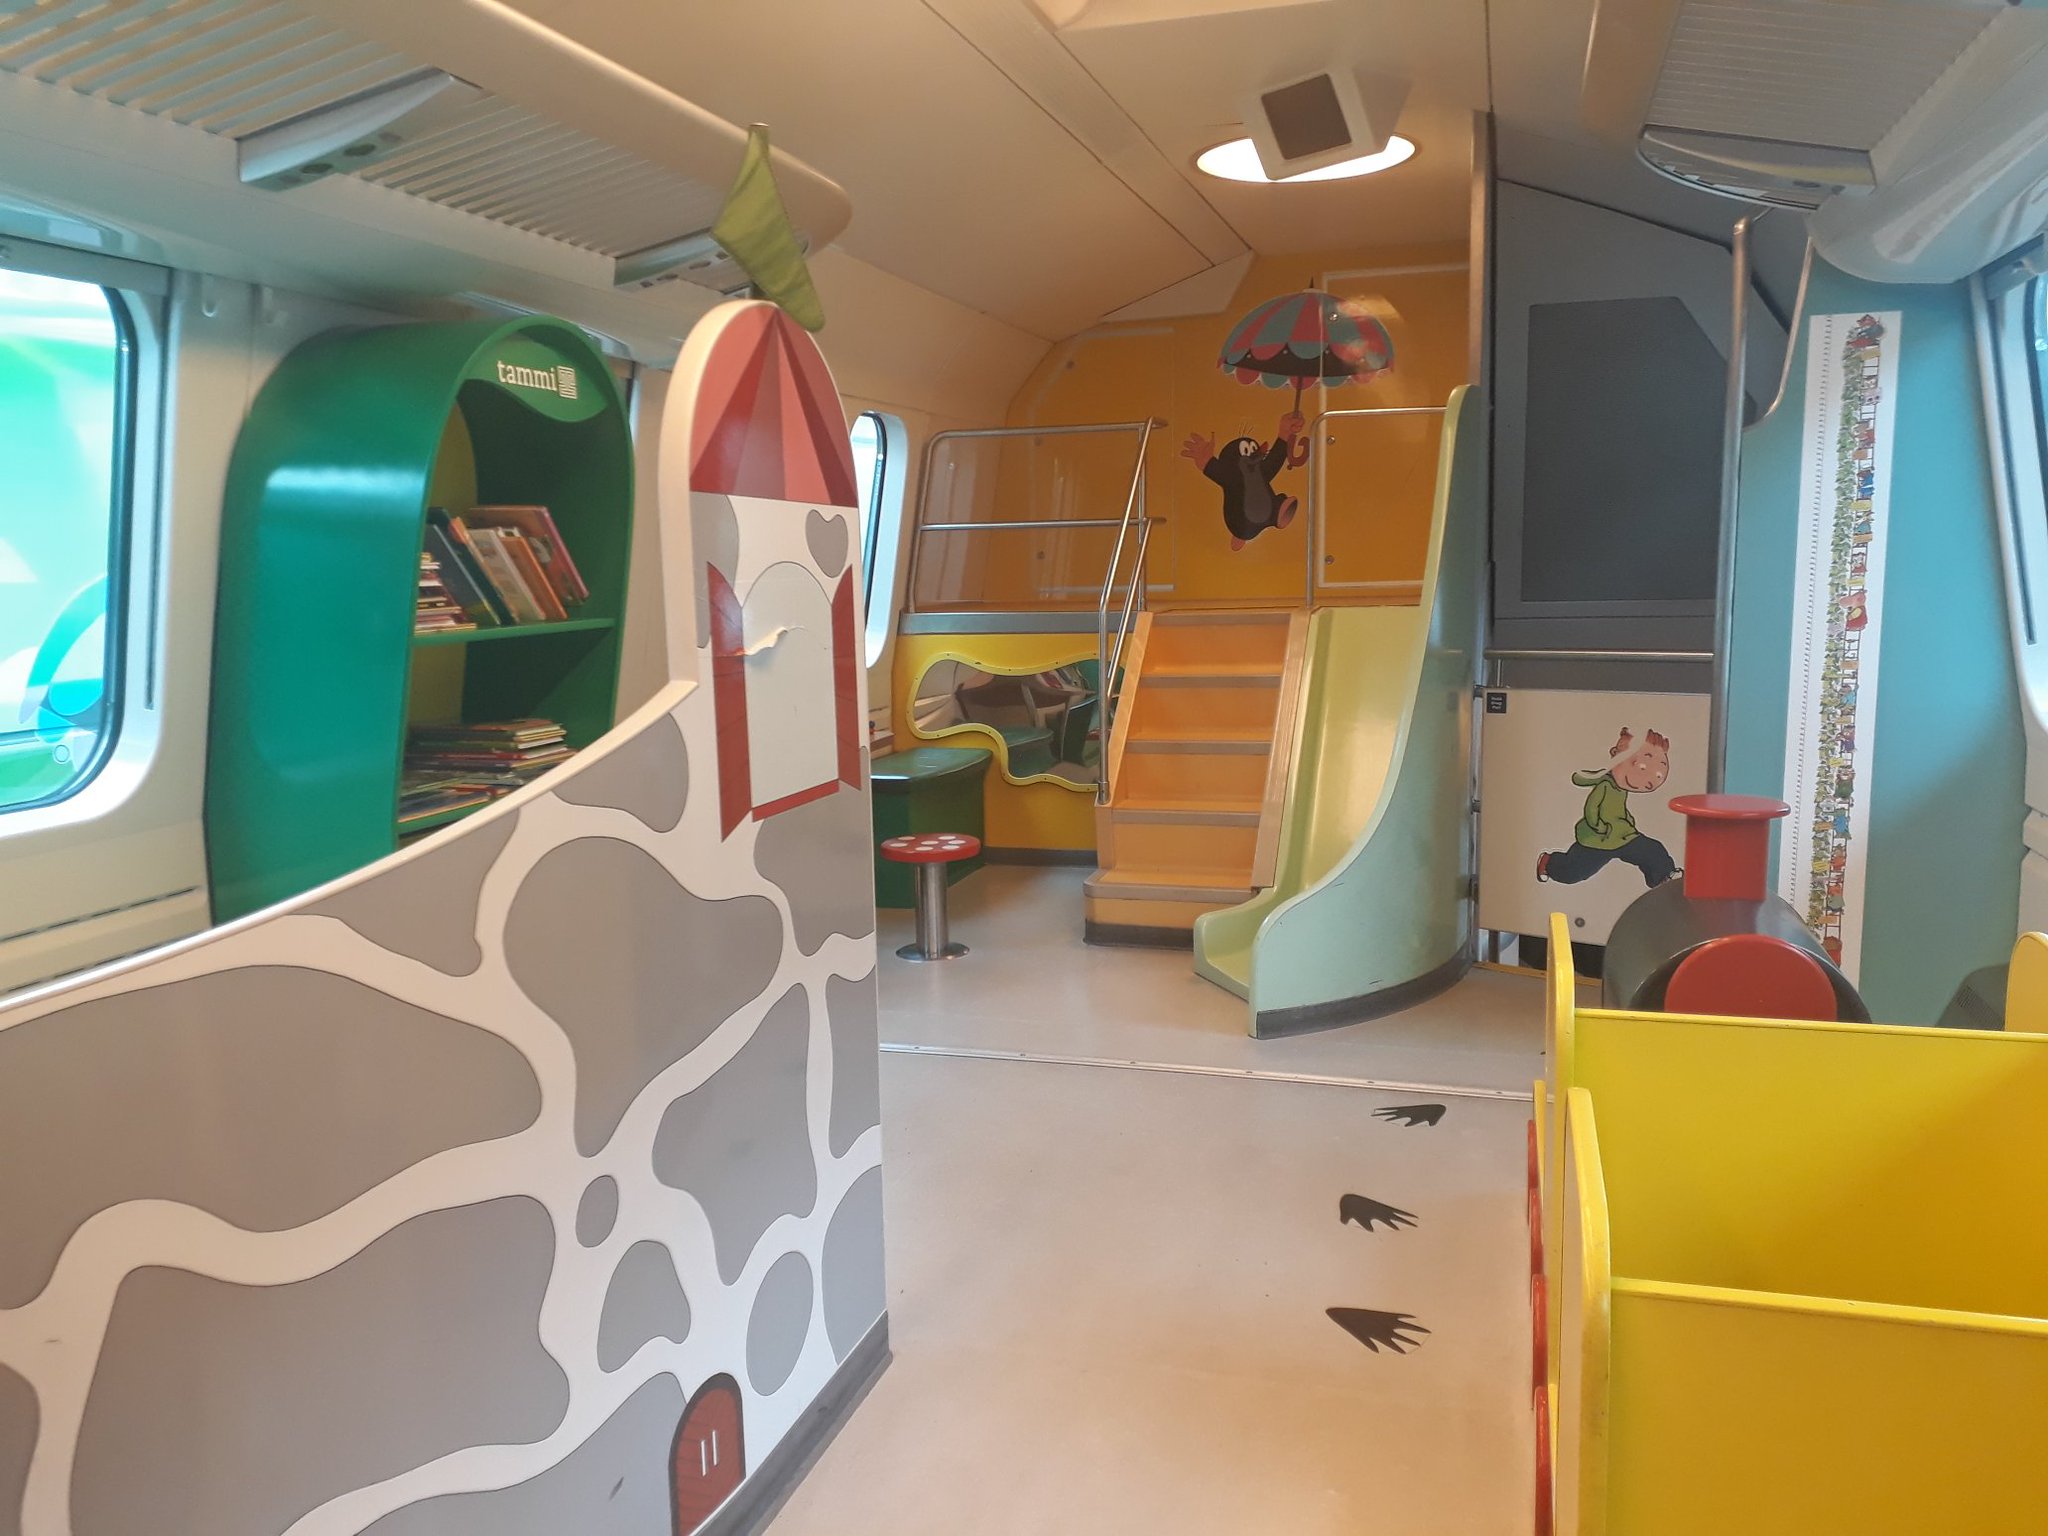 Gyerekeknek kialakított játszókocsik vannak a finn intercityken